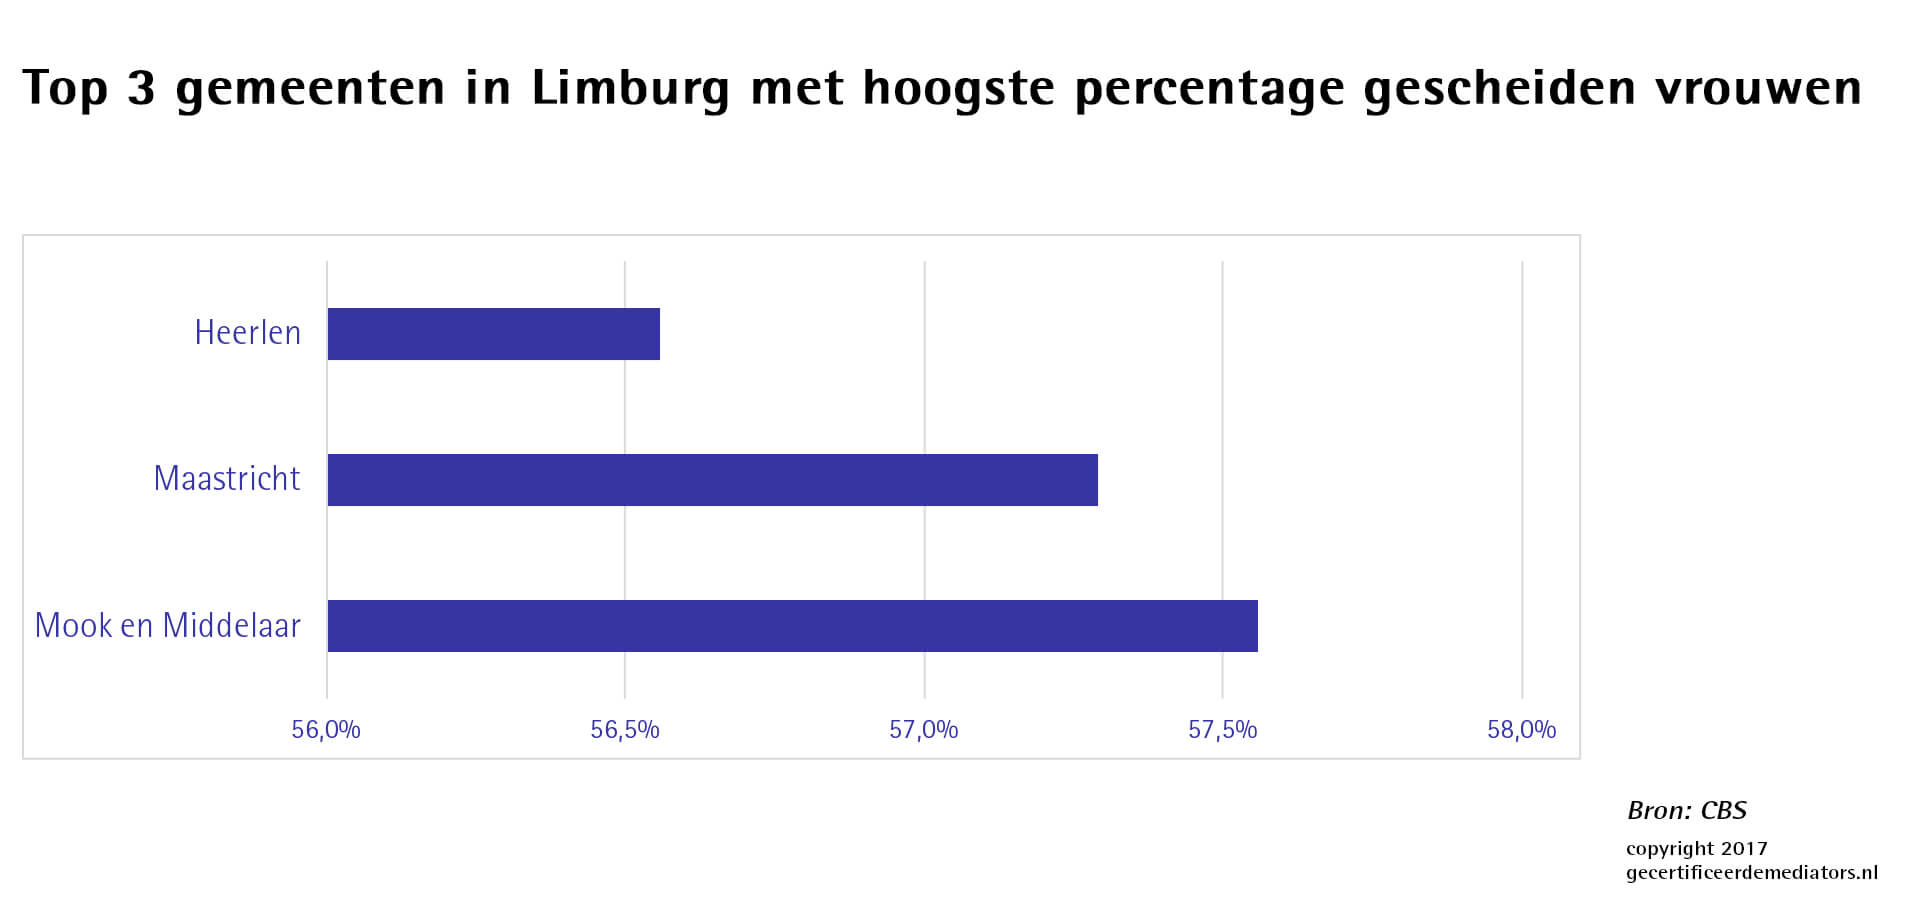 Top 3 gemeenten in Limburg met hoogste percentage gescheiden vrouwen